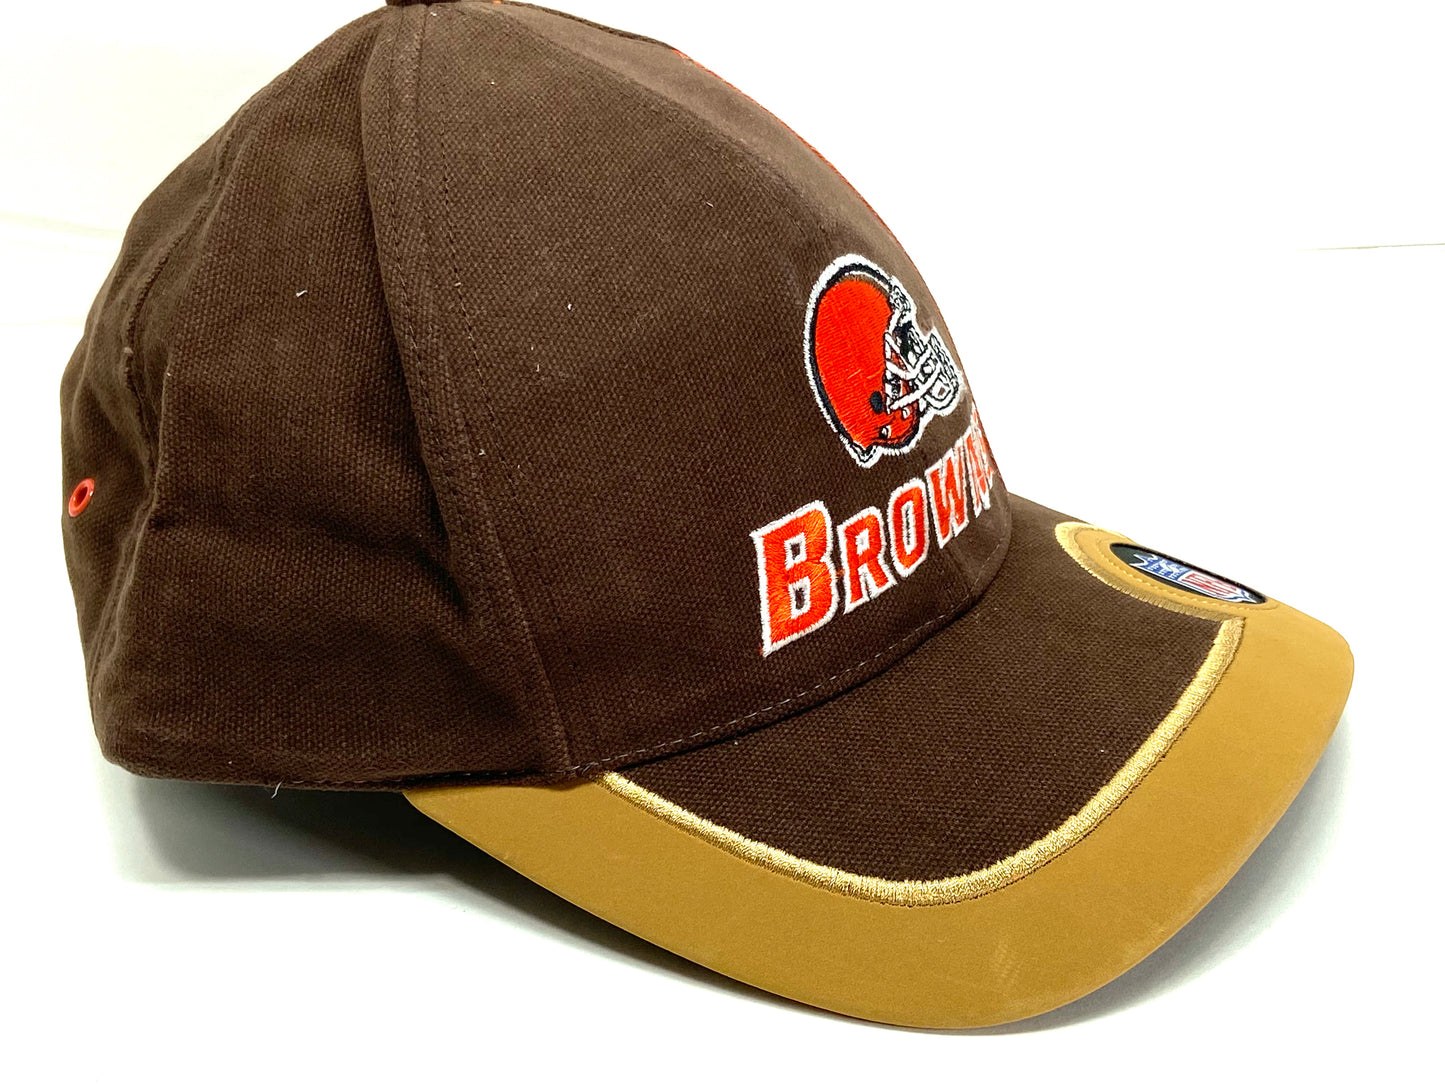 Cleveland Browns Vintage NFL Team Color "Sideline" Cap By Puma